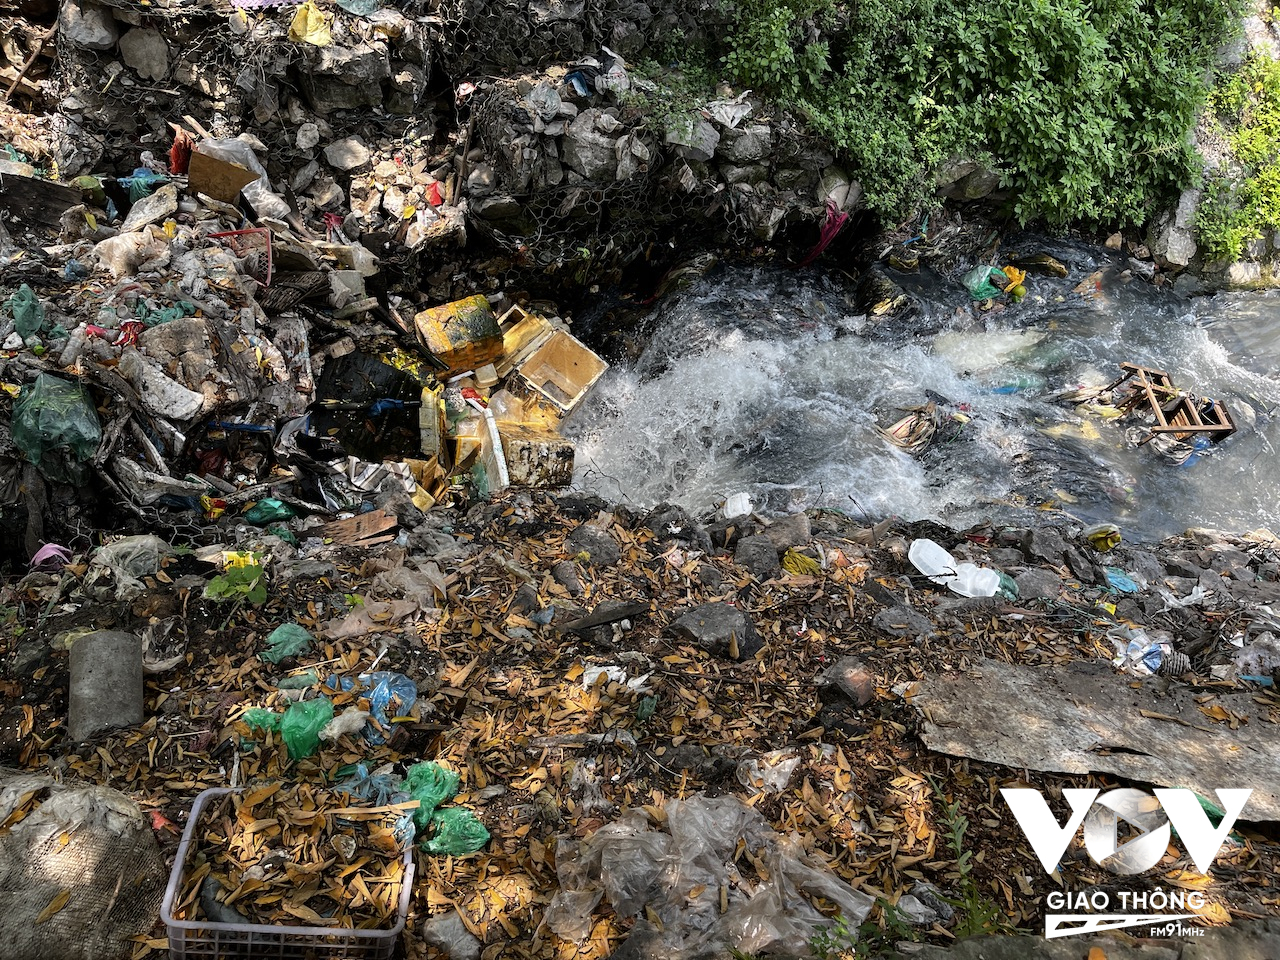 Do nước thải đều chưa qua xử lý nên lúc nào cũng đen đặc và bốc mùi hôi thối, cùng rác thải từ chợ Long Biên gần đó và cư dân sinh sống ở khu. vực này vứt trực tiếp xuống đây